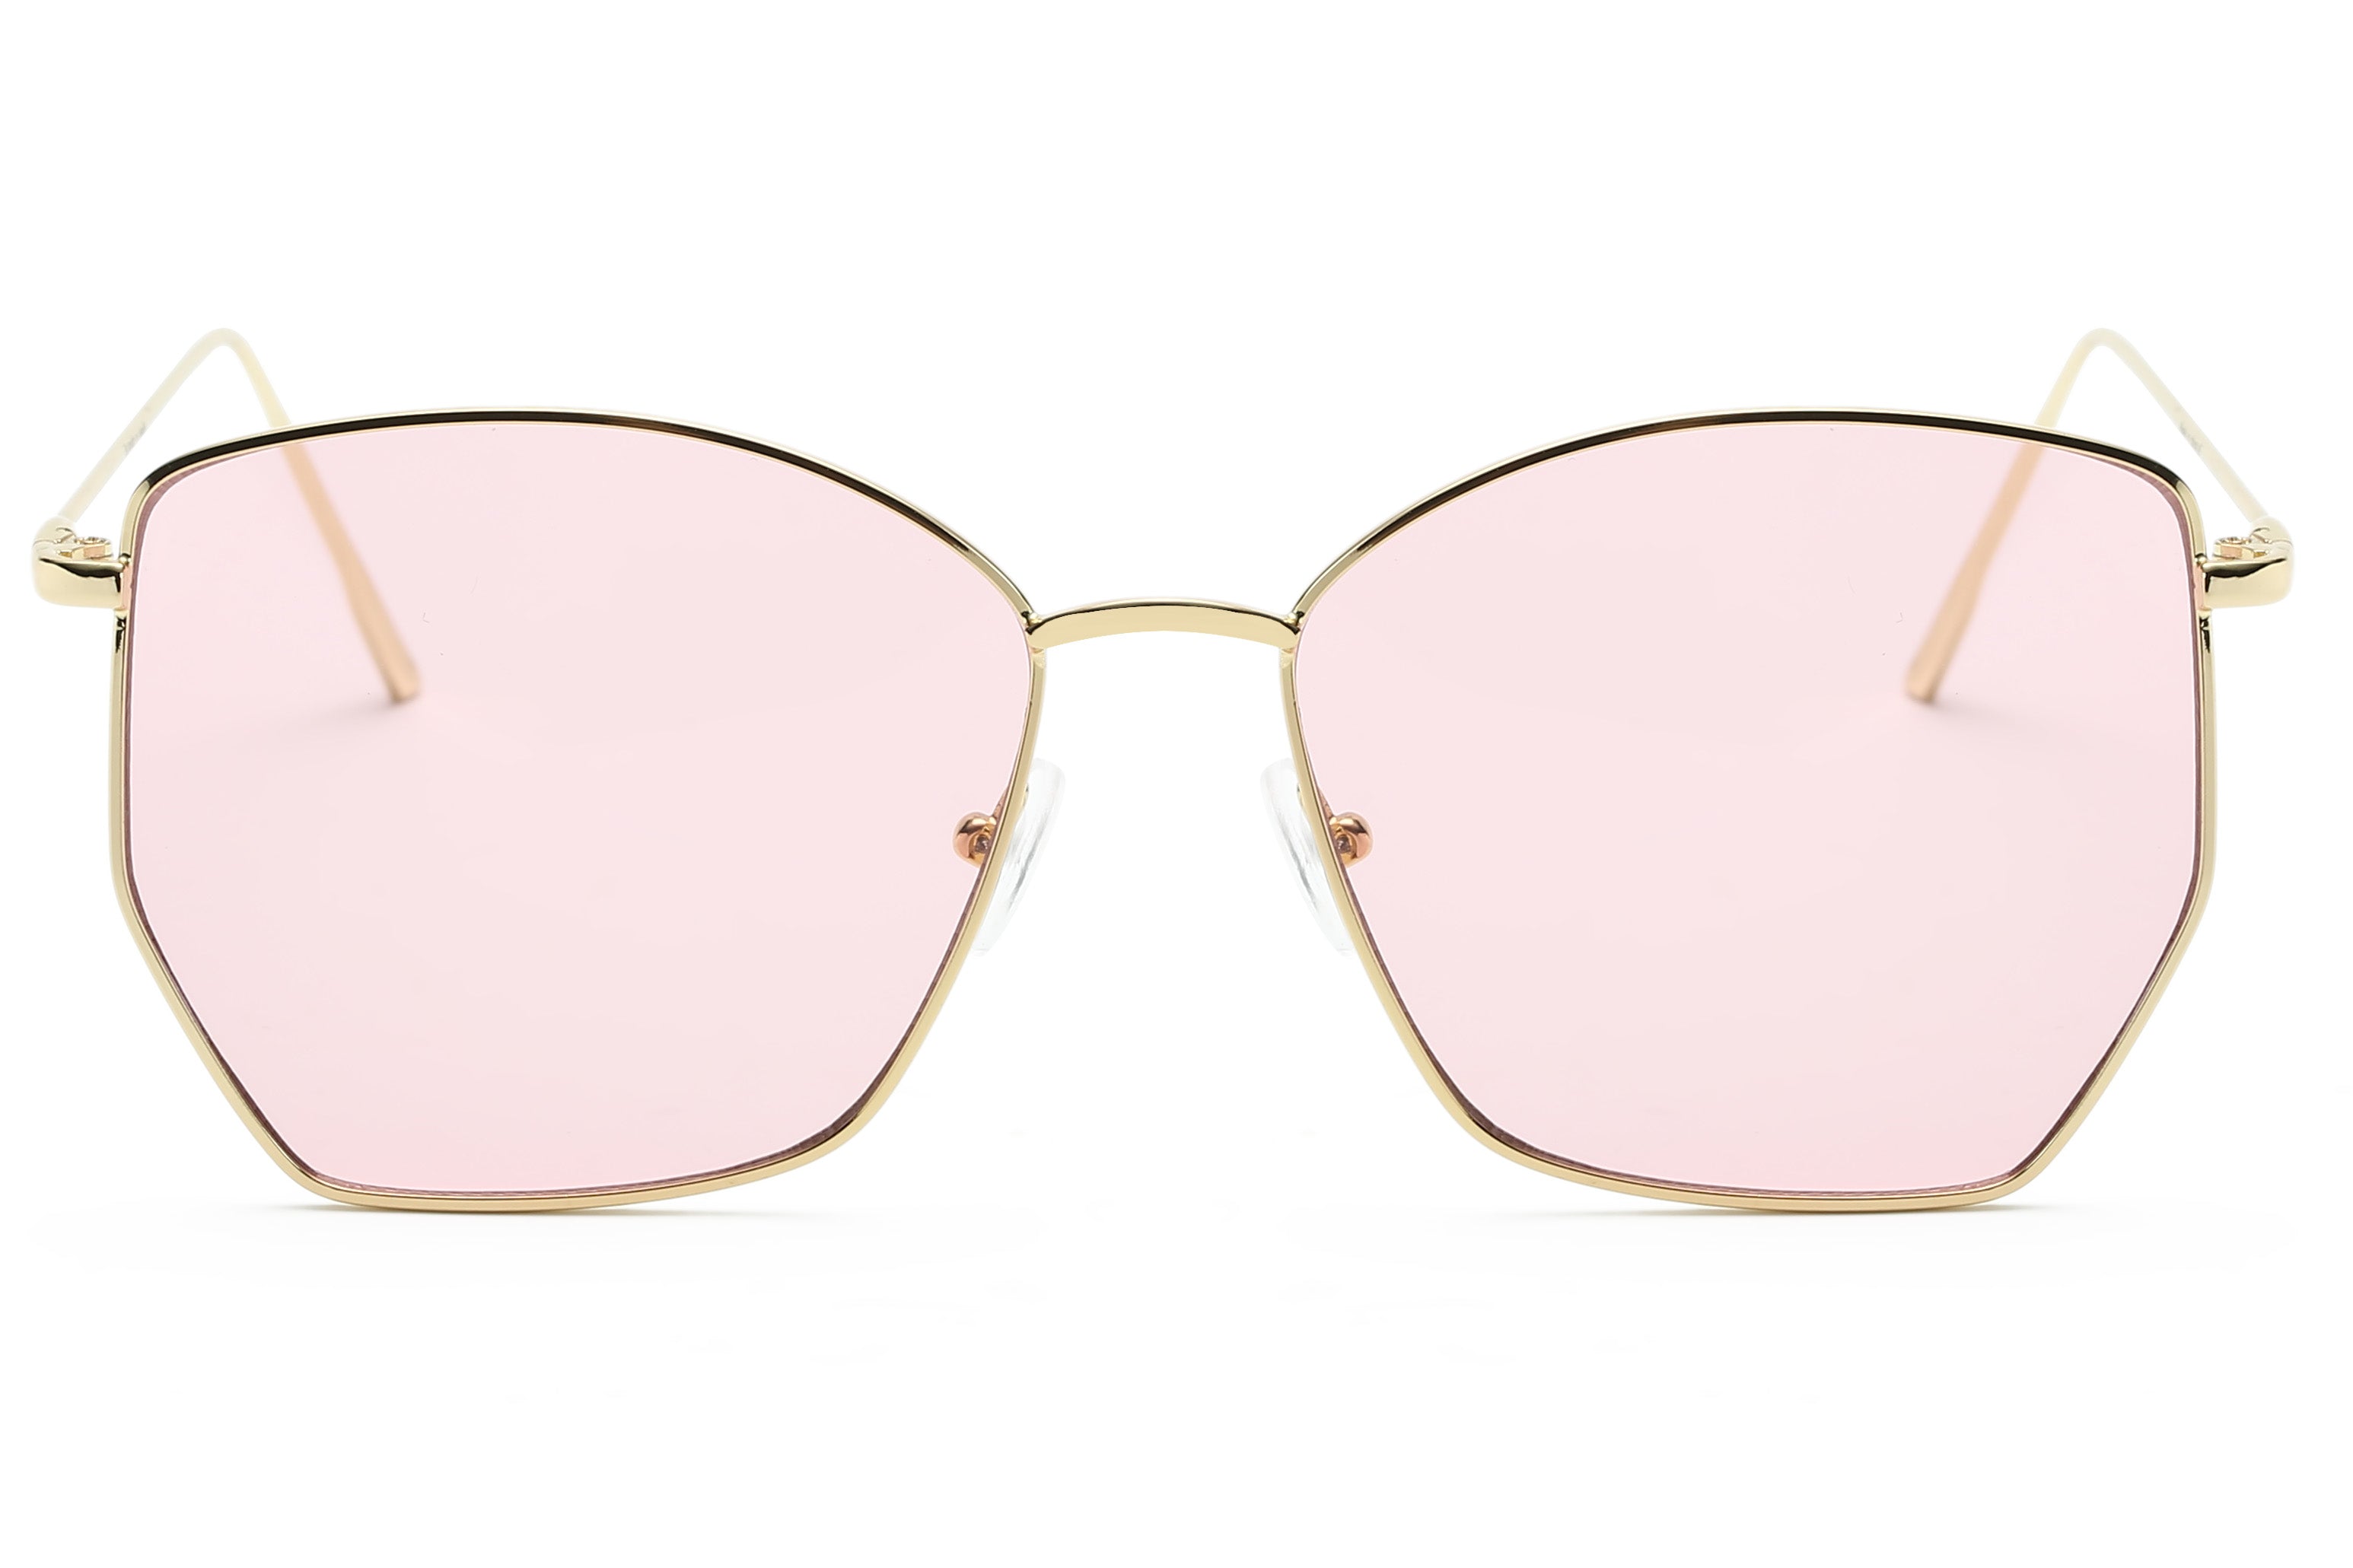 S2073 - Women Oversize Geometric Fashion Cat Eye Sunglasses Gold/Pink